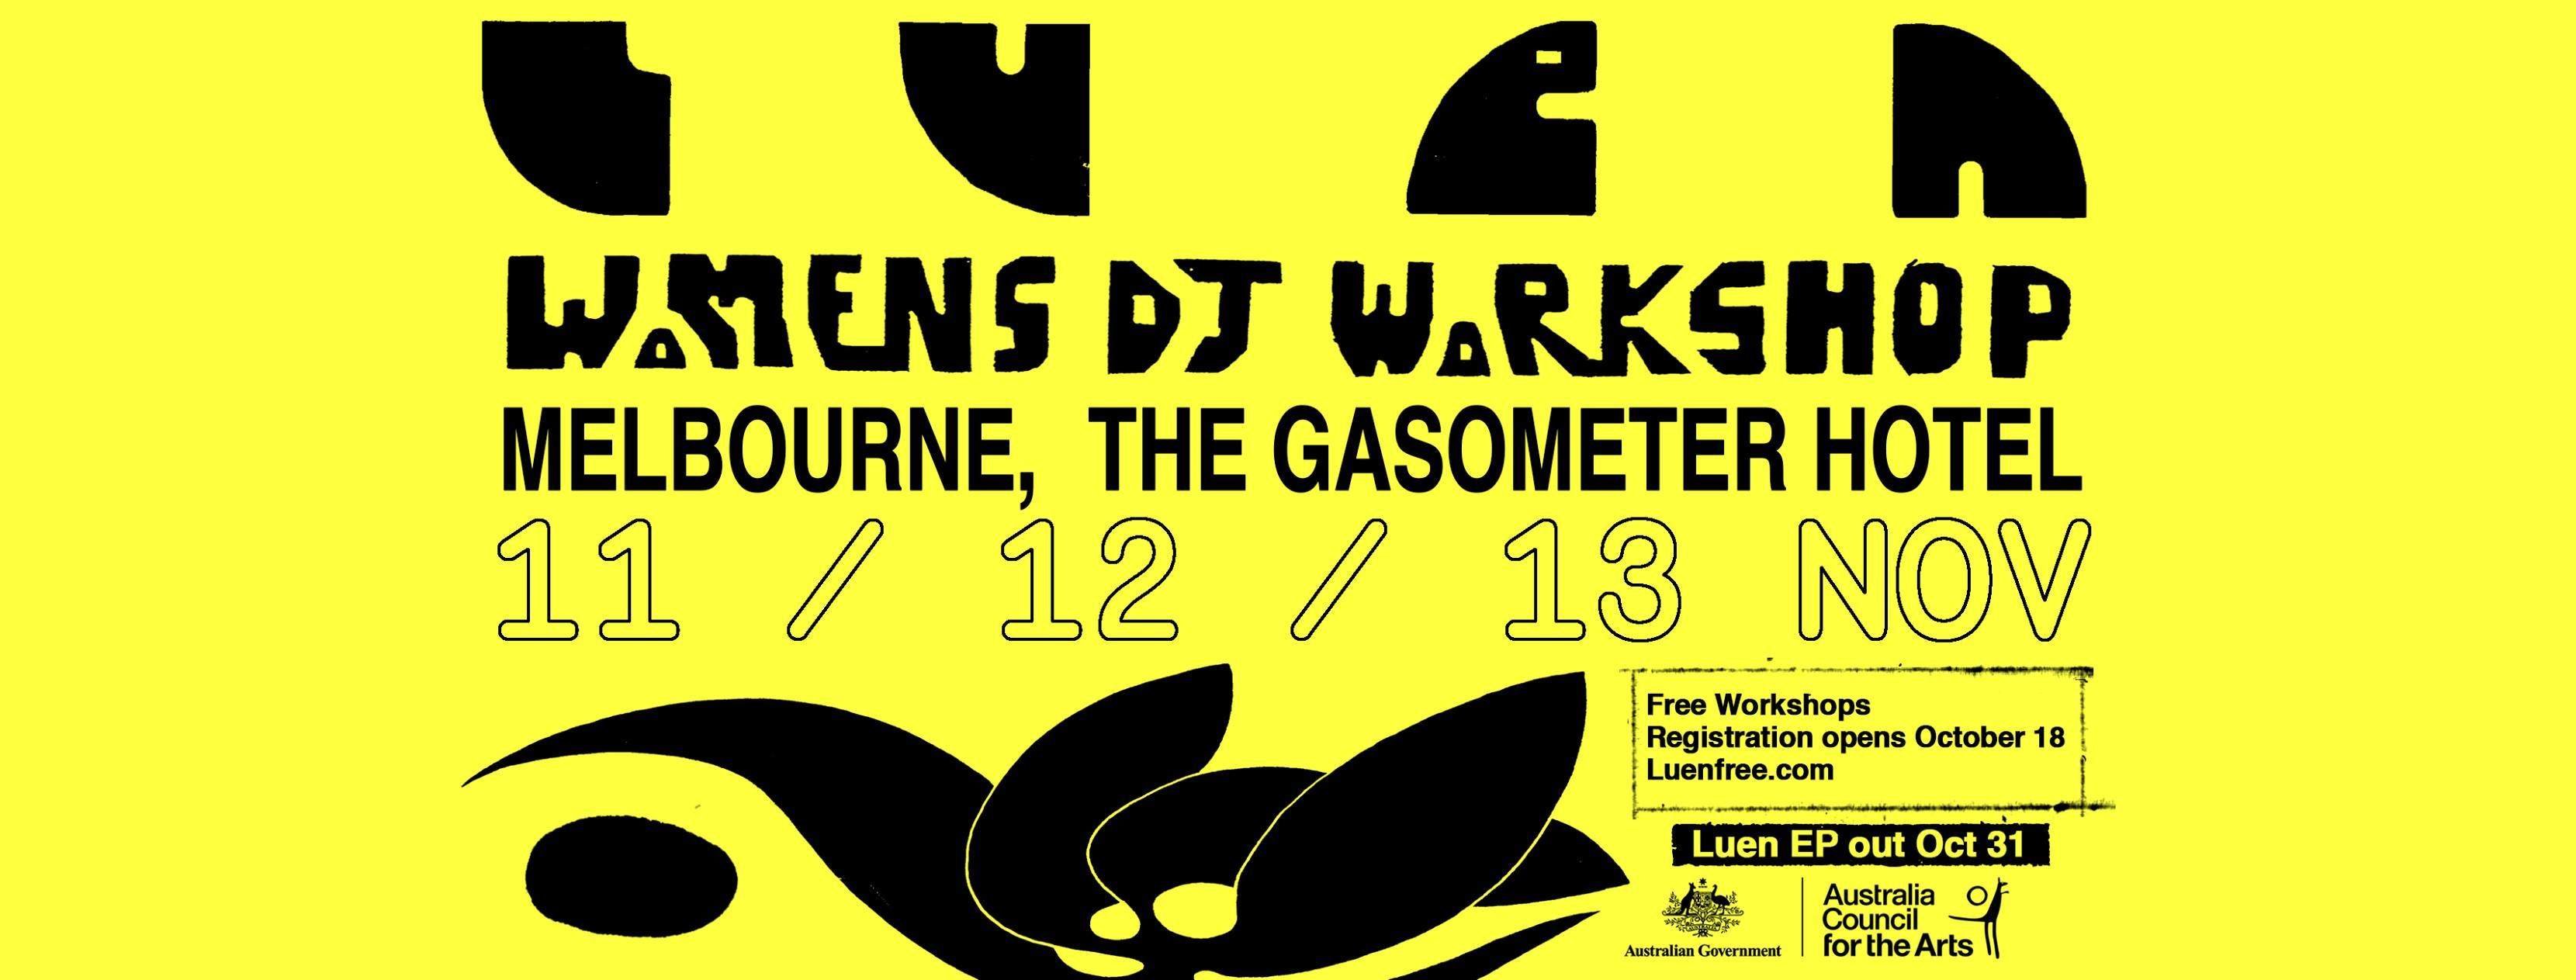 Women's DJ Workshops Melbourne - Página frontal